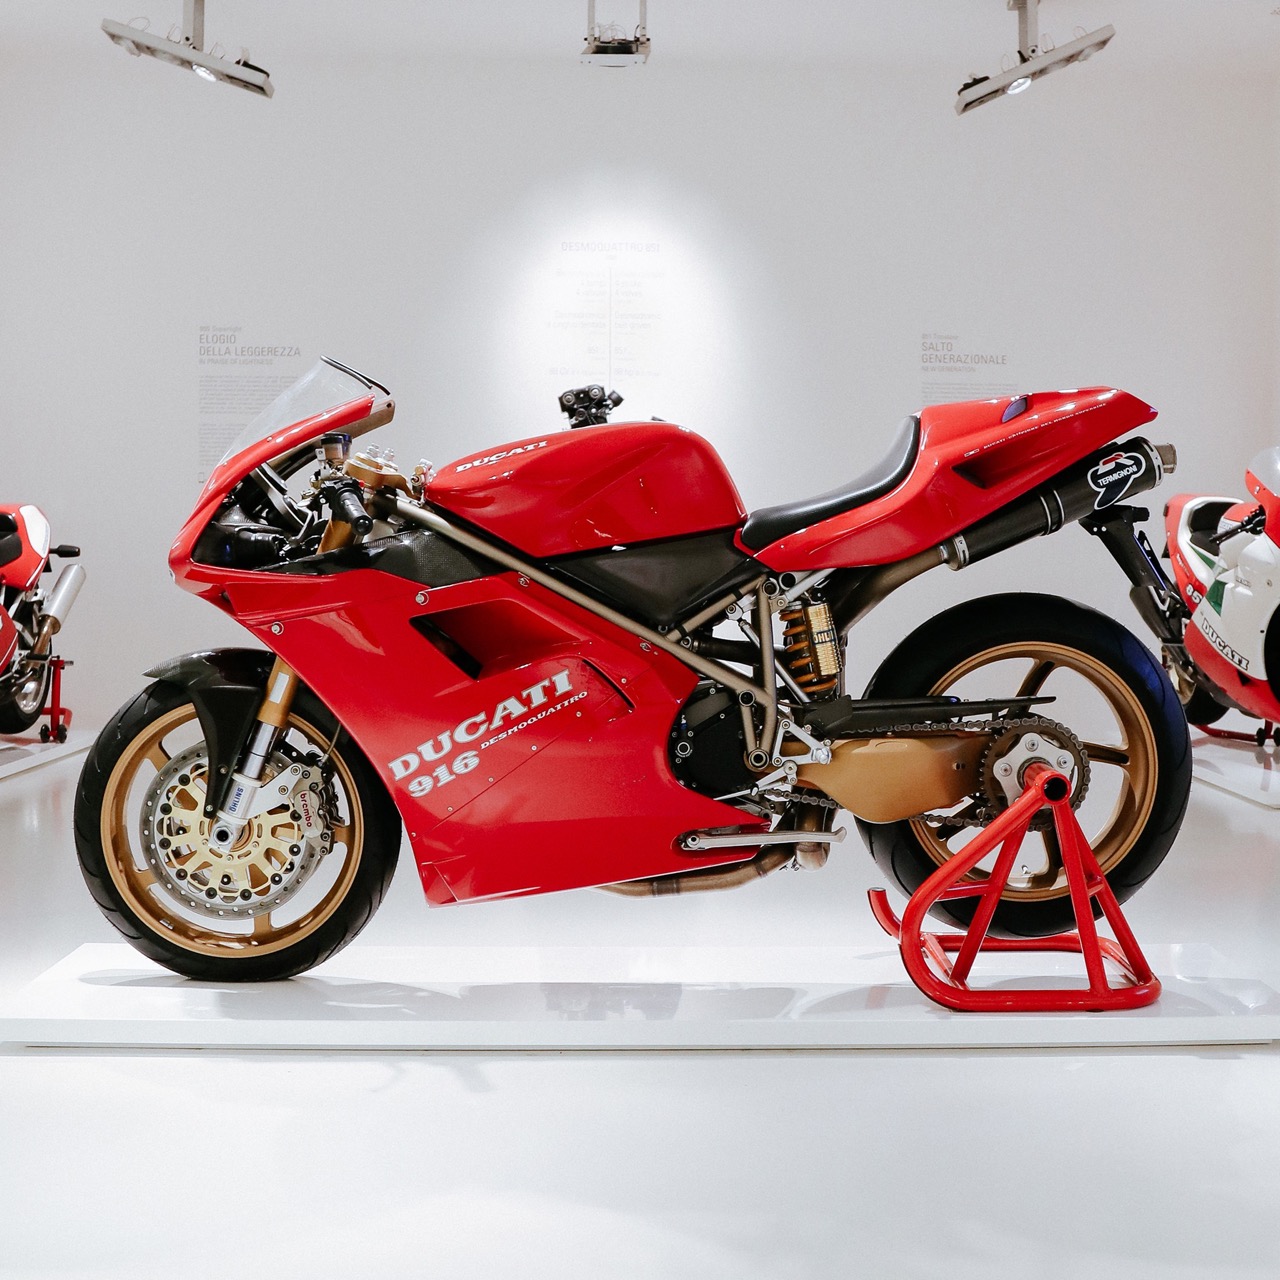 Ducati 916 - Museo Ducati 